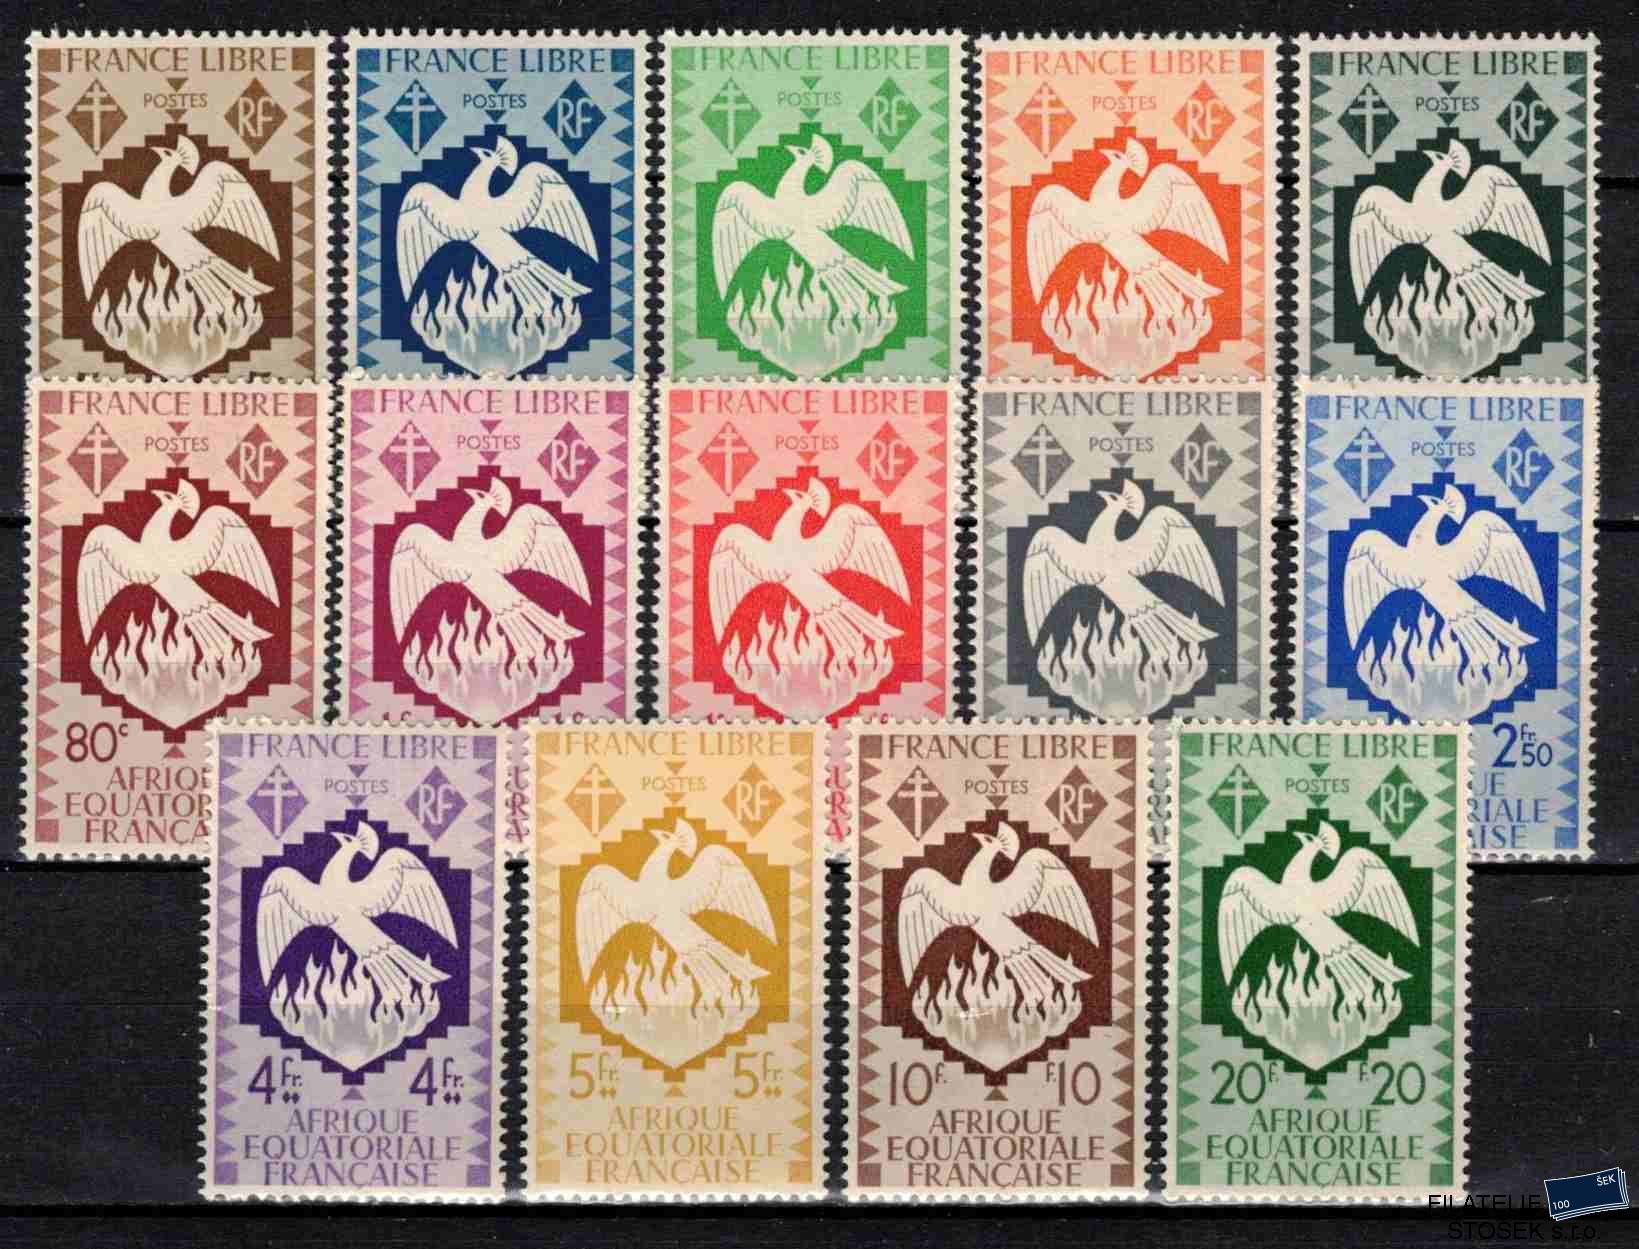 Afr.équatoriale známky 1941 Londres